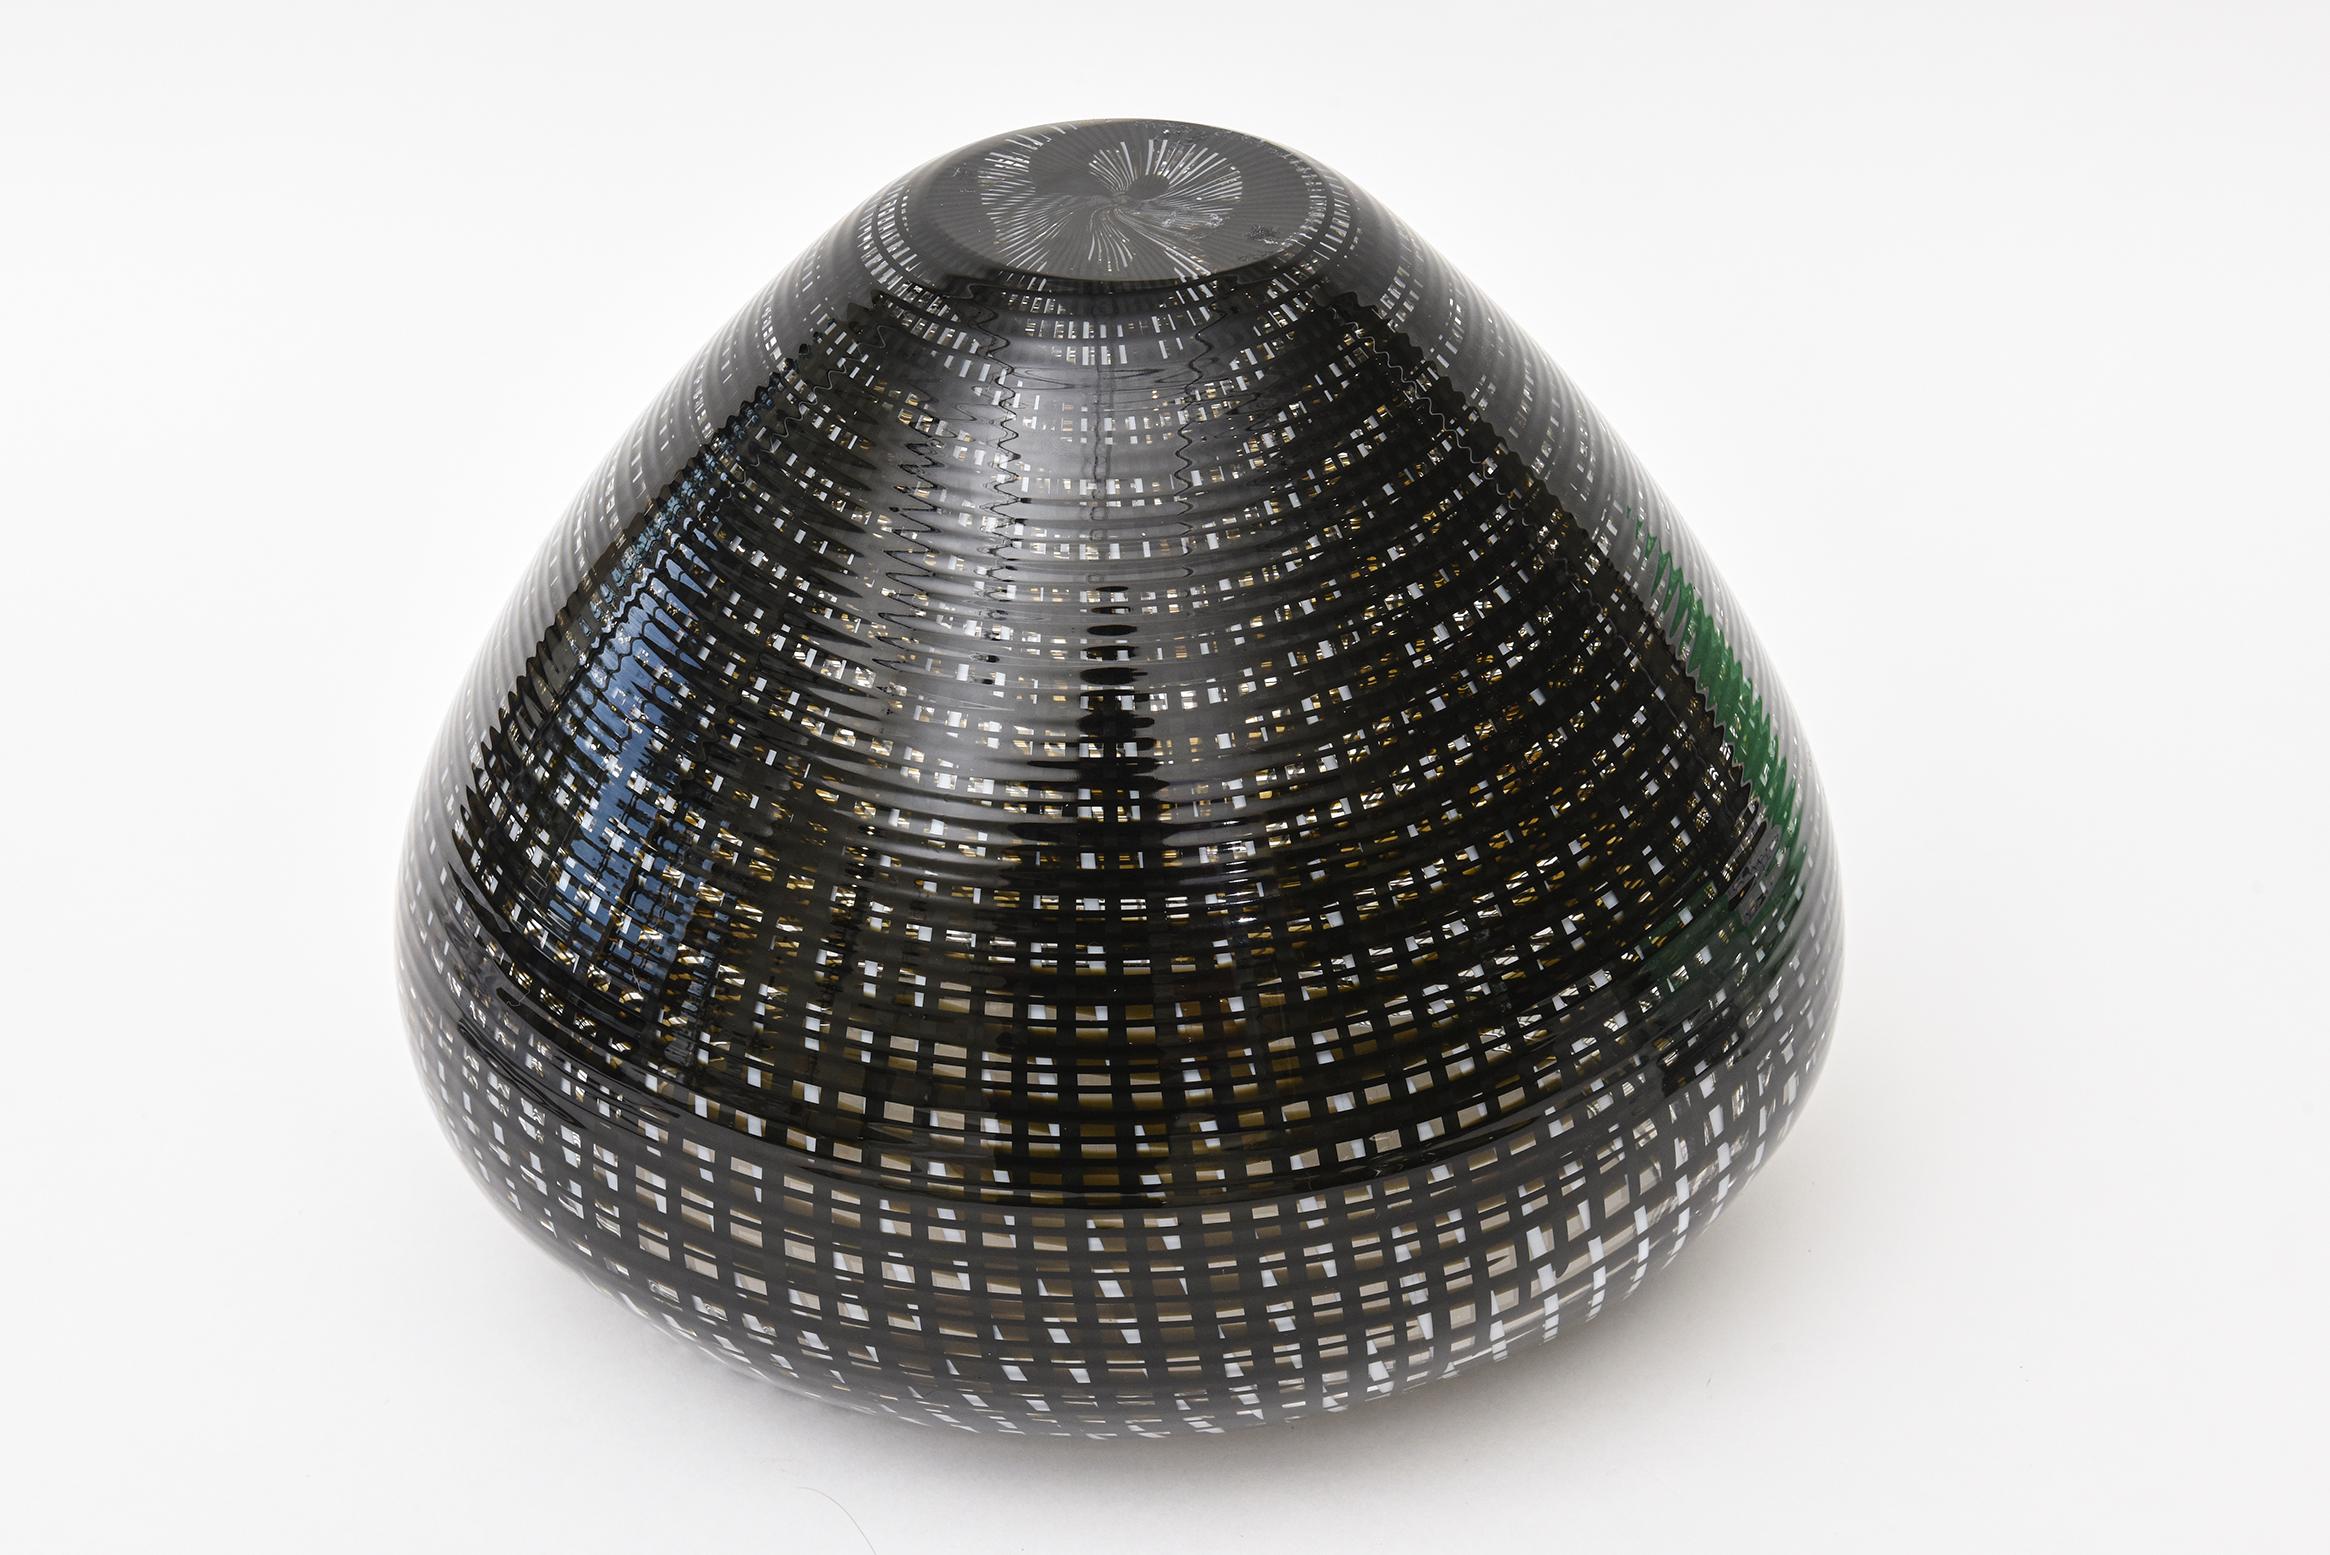 Lino Tagliapietra Blown Glass Tessuto Vase, Bowl or Vessel Sculpture, Italian For Sale 1